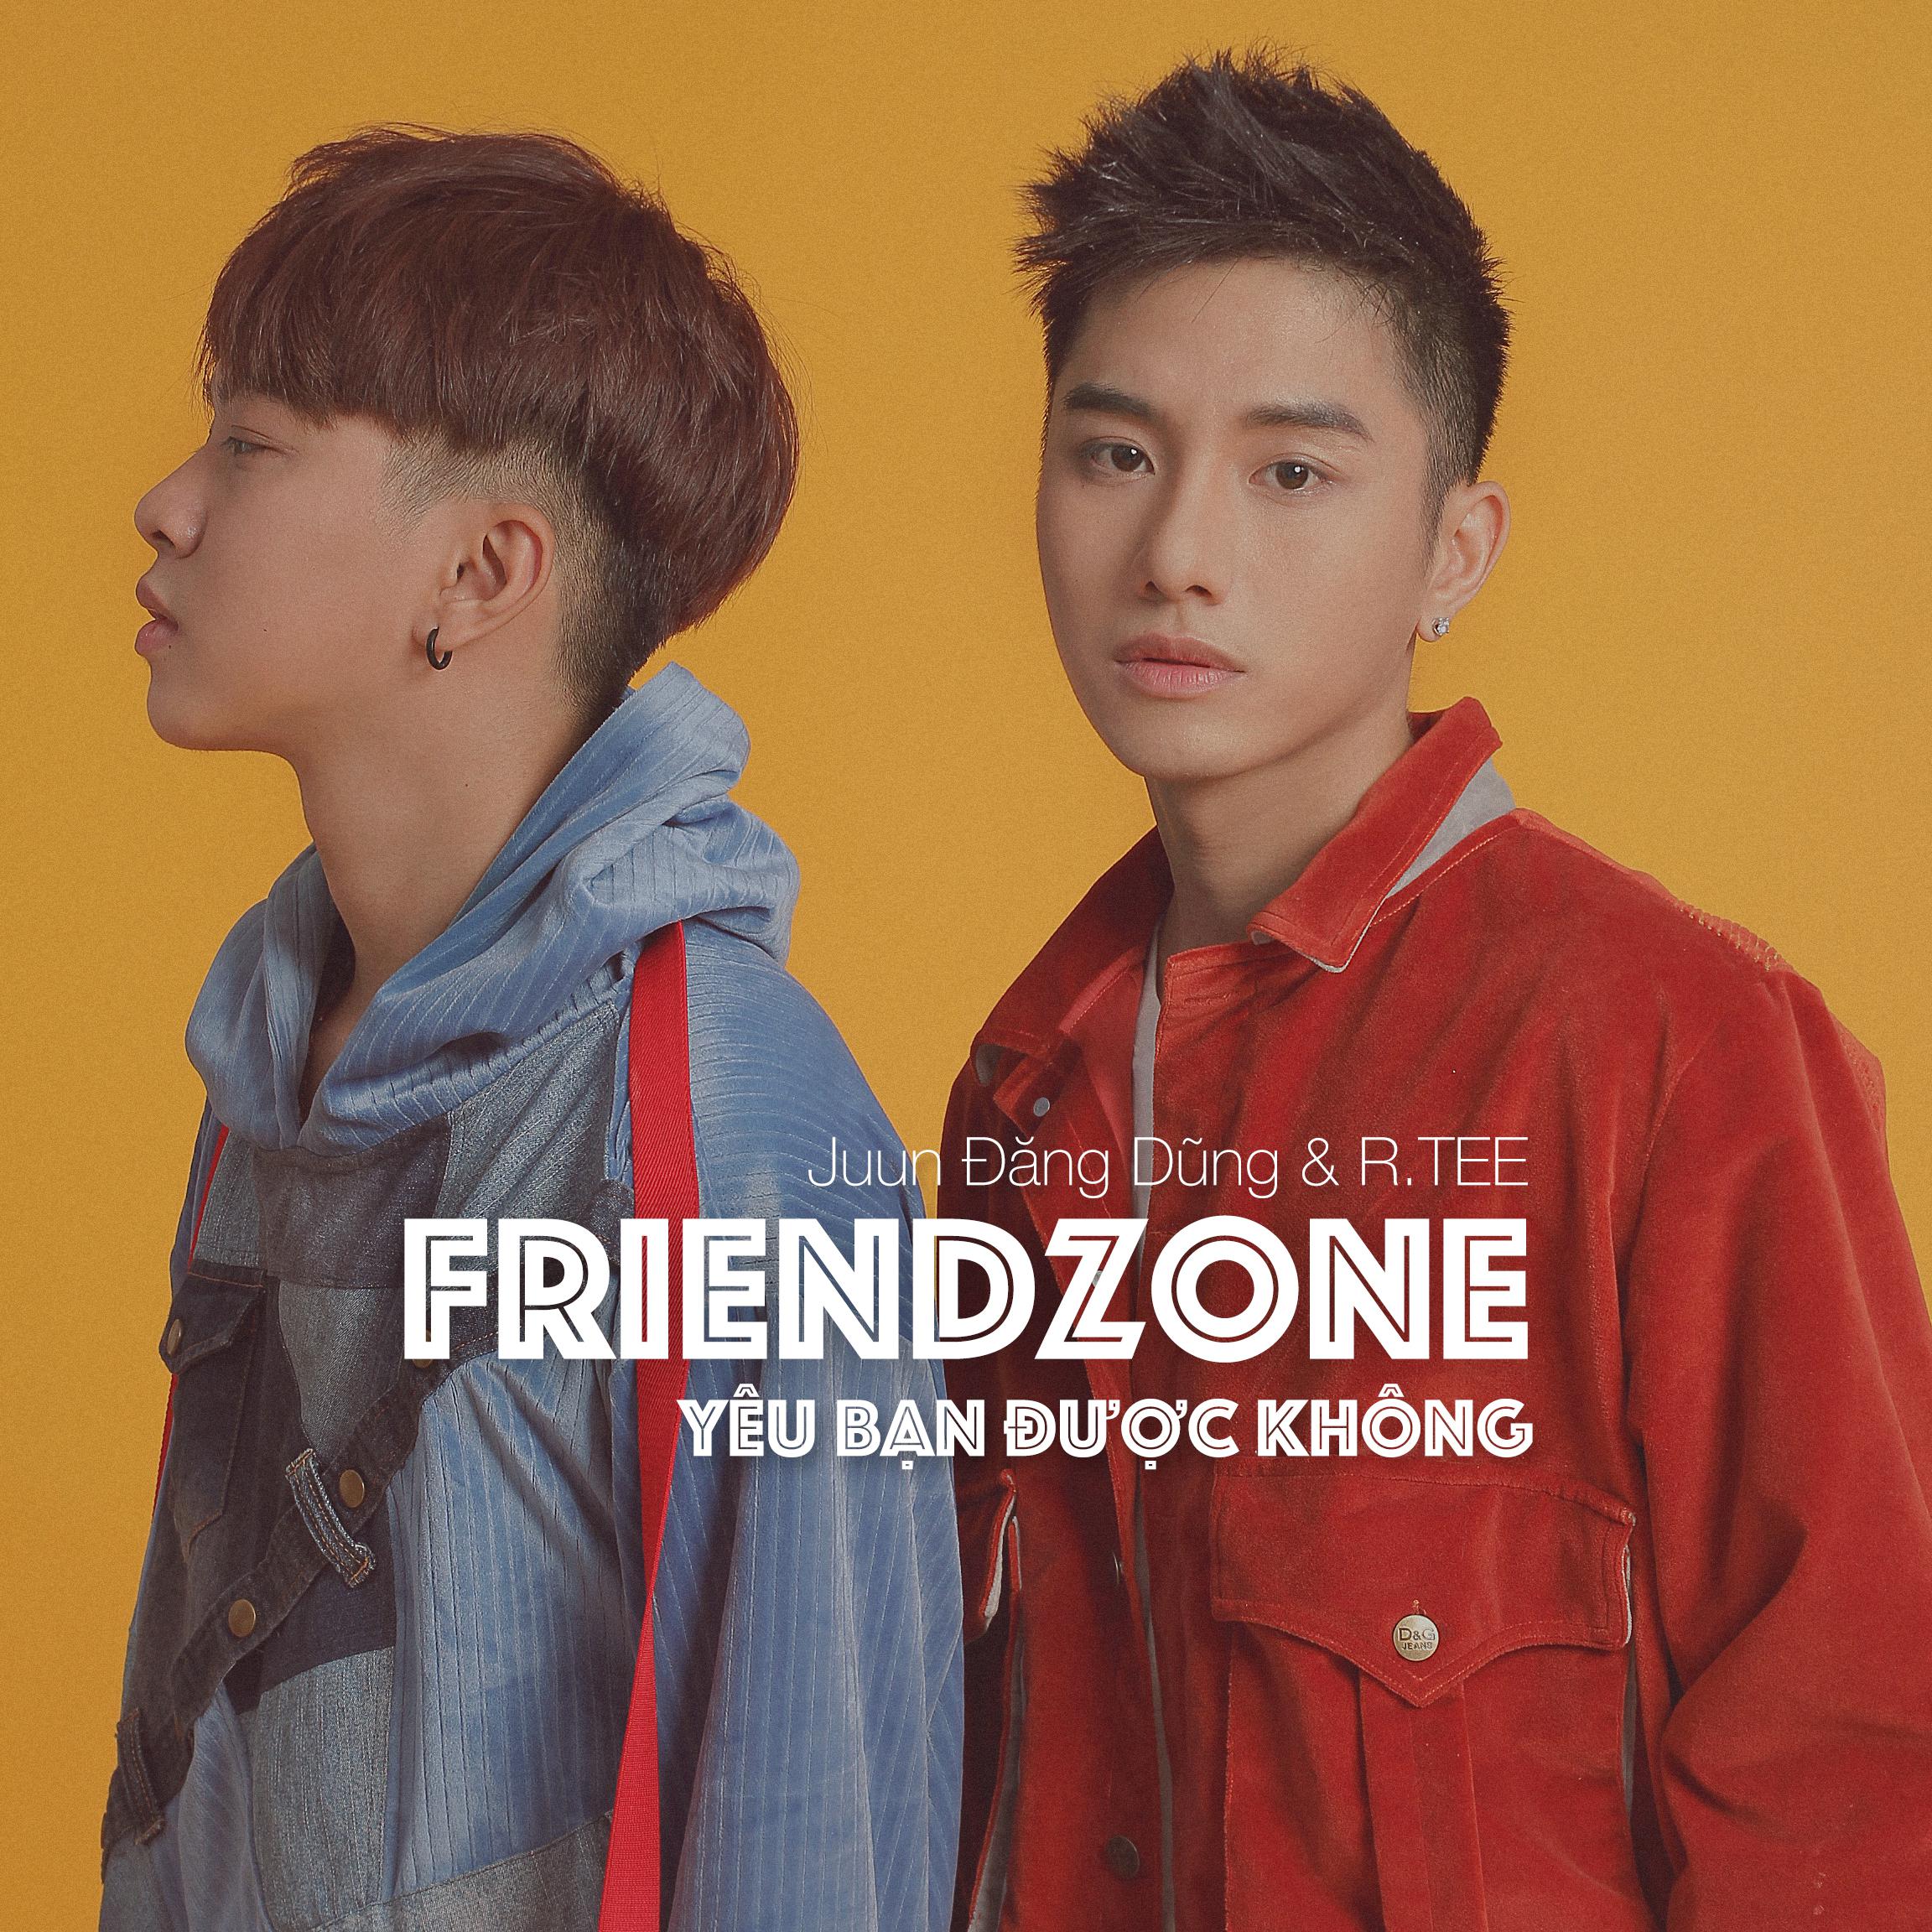 Friendzone (Yeu Ban Duoc Khong)